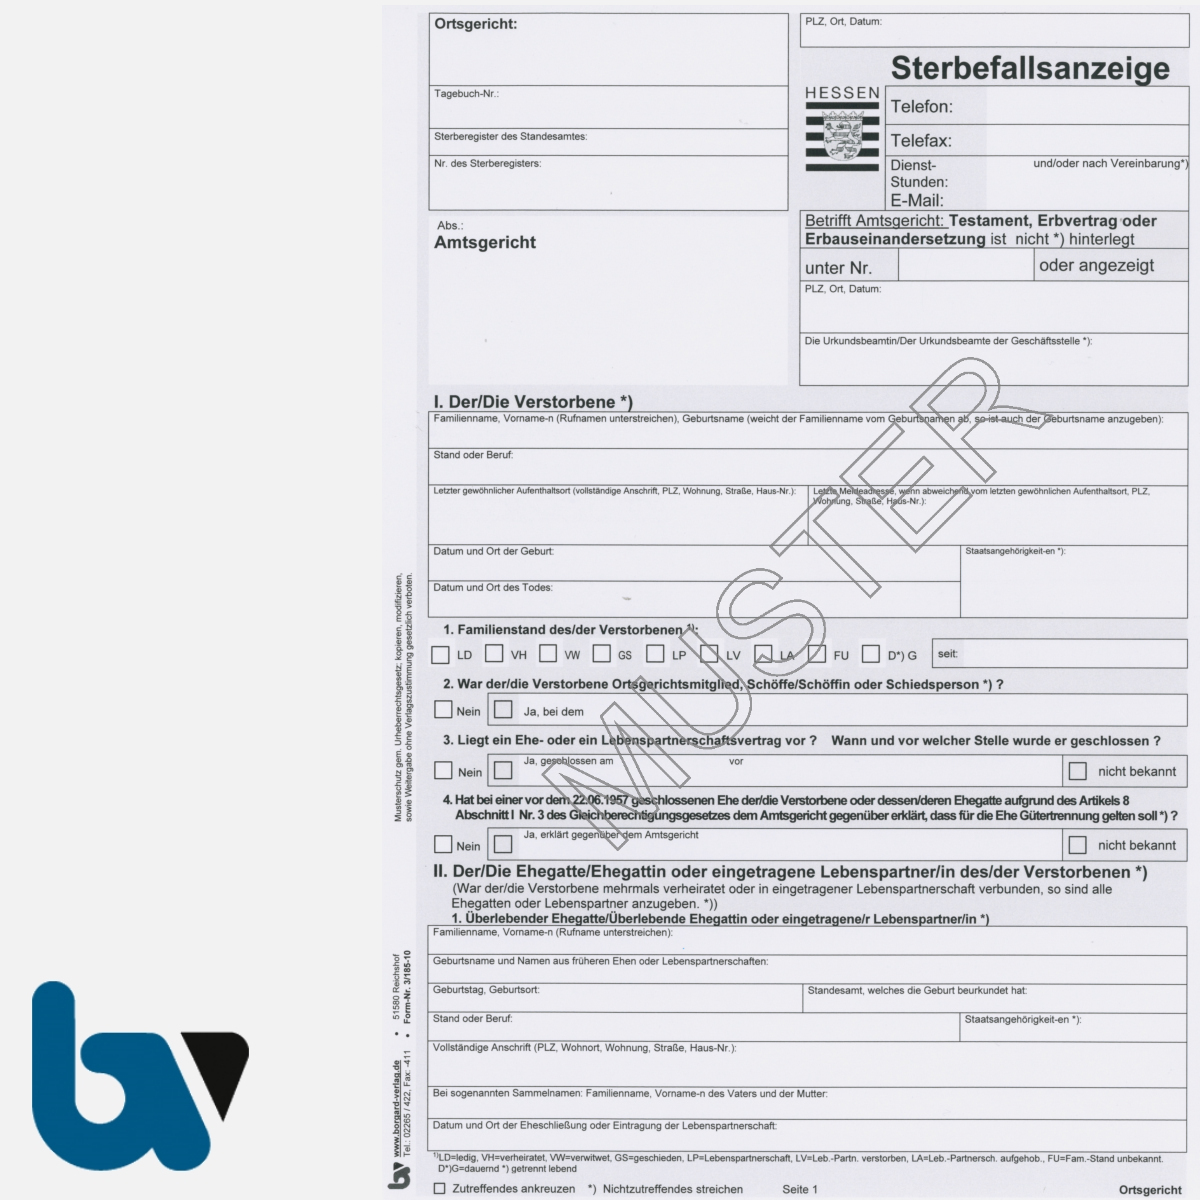 3/185-10 Sterbefallsanzeige Sterbefallanzeige Ortsgericht Hessen Muster amtlich mit Durchschrift Kopie DIN A4 Seite 1 Neu | Borgard Verlag GmbH